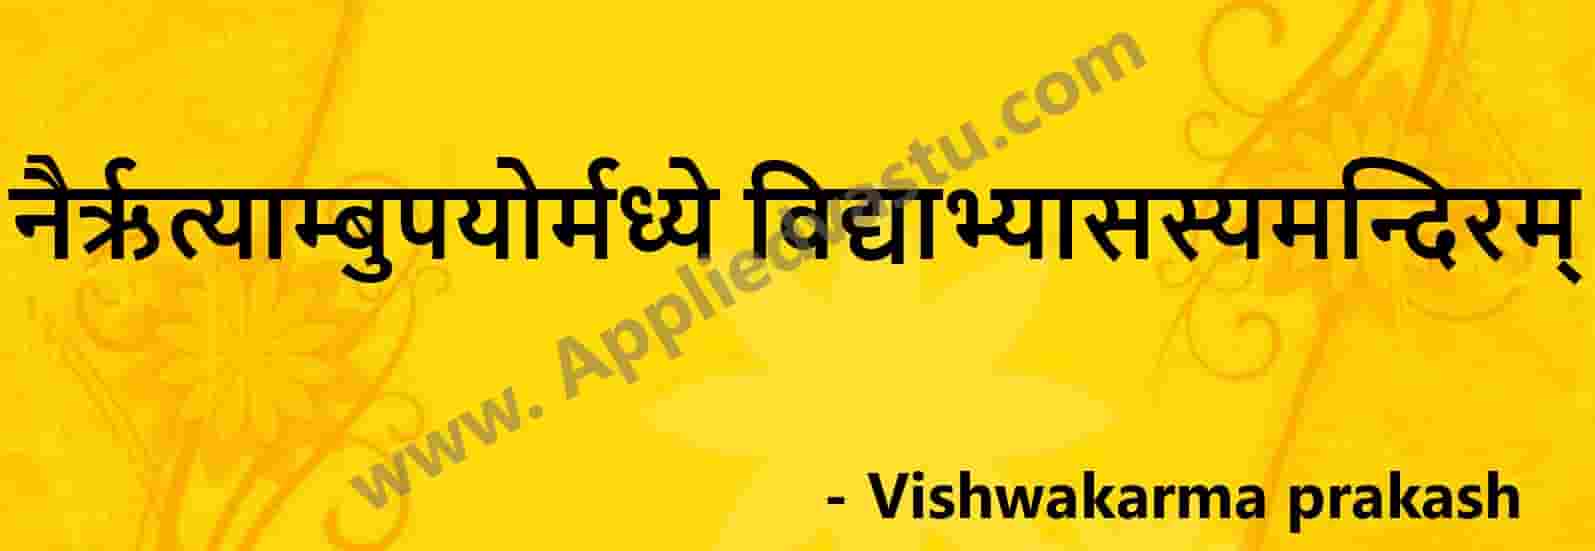 Vastu for study room - vastu tips for study room - sloke - Applied Vastu- viswakarma prakash